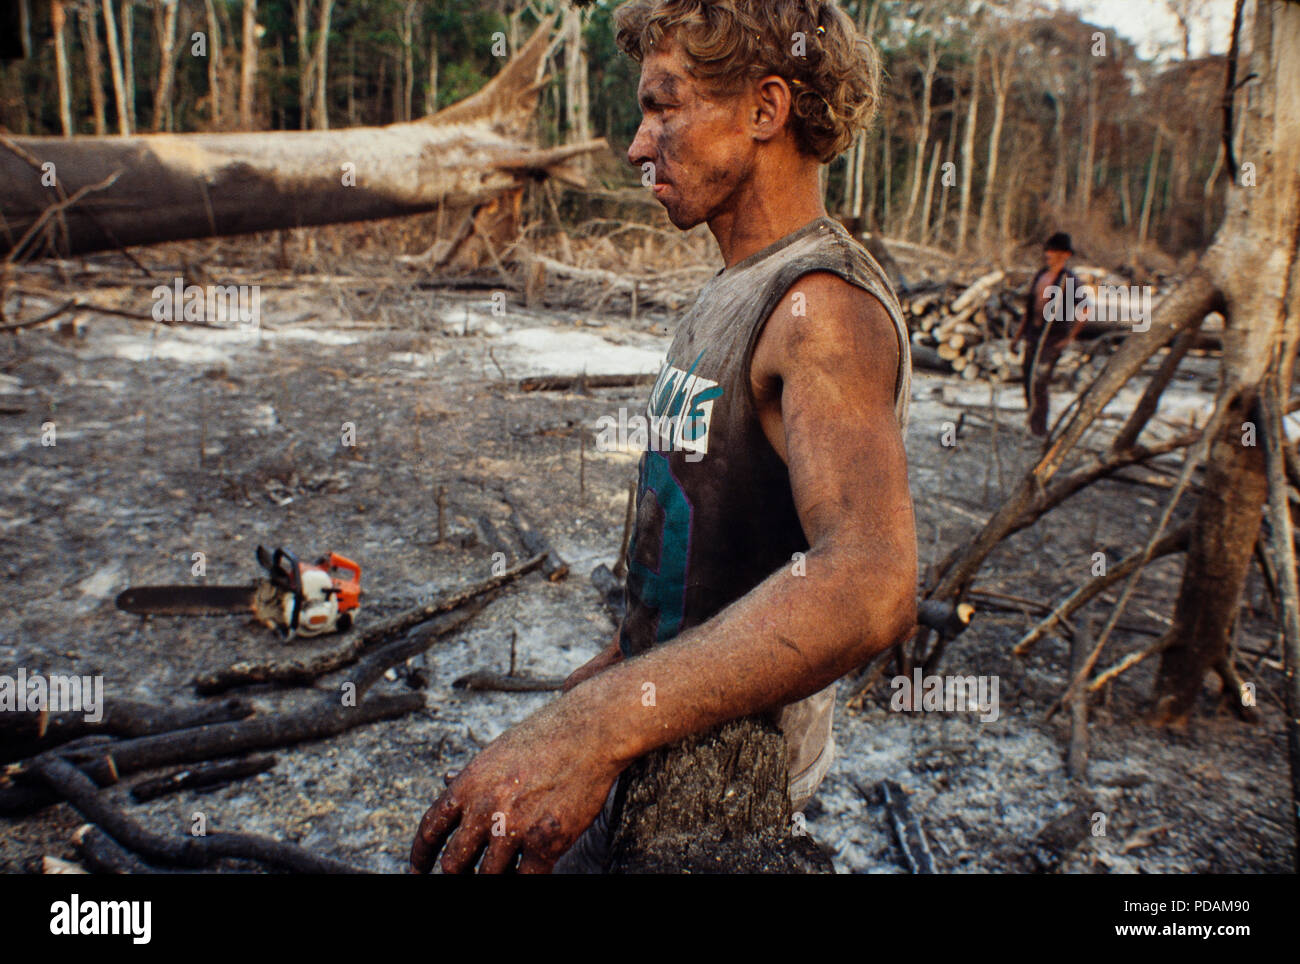 Protokollierung, Amazonas Regenwald Abstand, Arbeiter fällten Bäume mit  Kettensäge in einem Hieb-und-verbrannten Flecken des Waldes. Morgen  Zustand, Brasilien Stockfotografie - Alamy